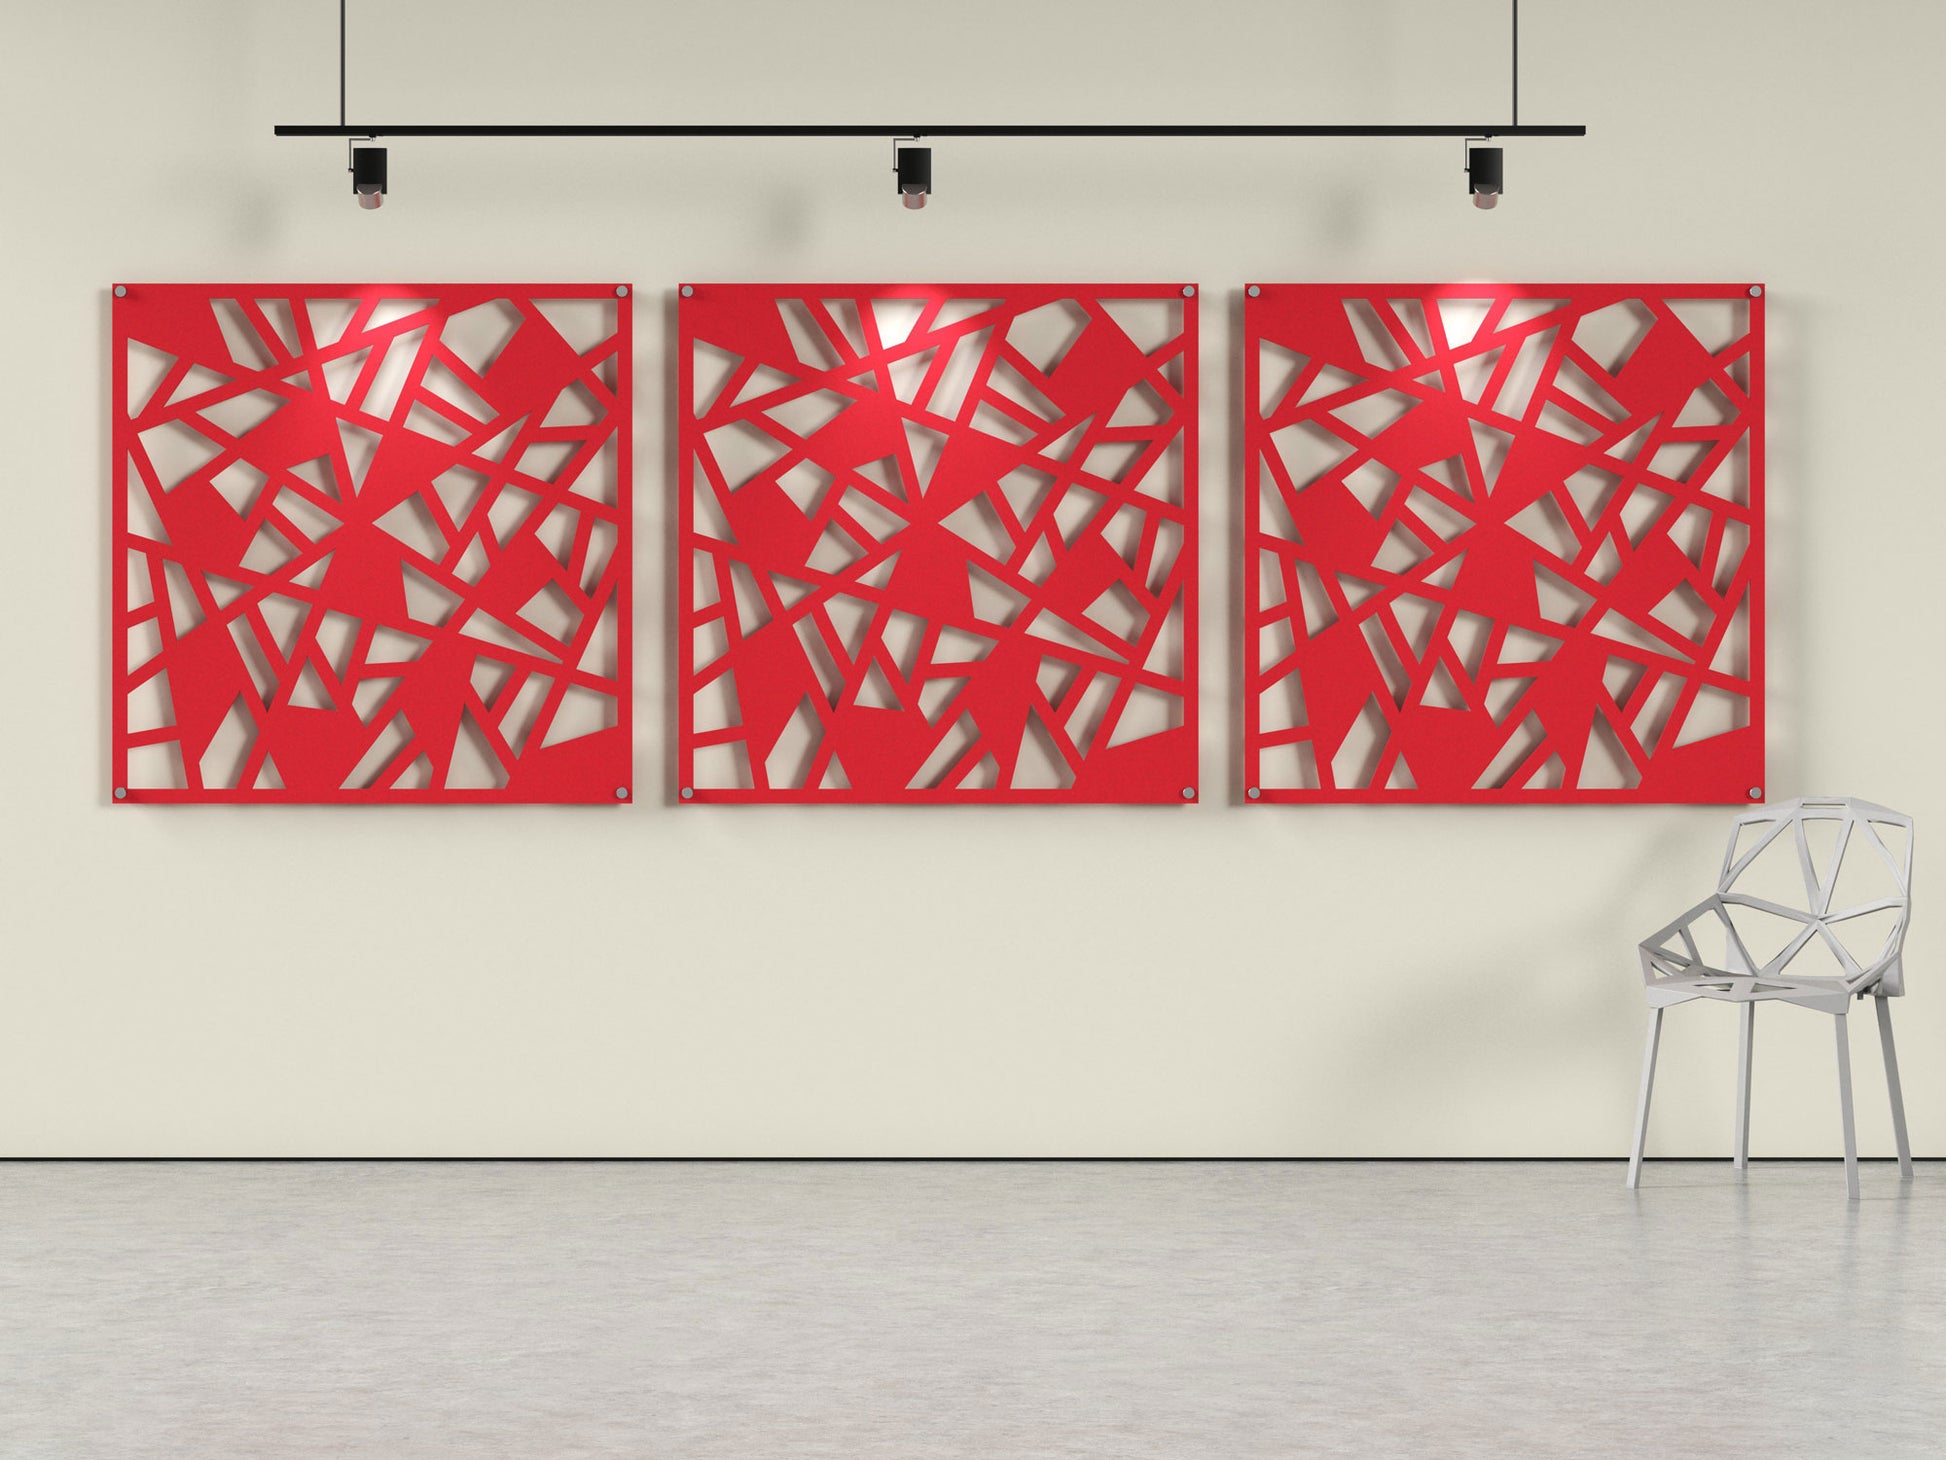 Acoustic felt wall panels - 4x4 - Broken Window - room view render